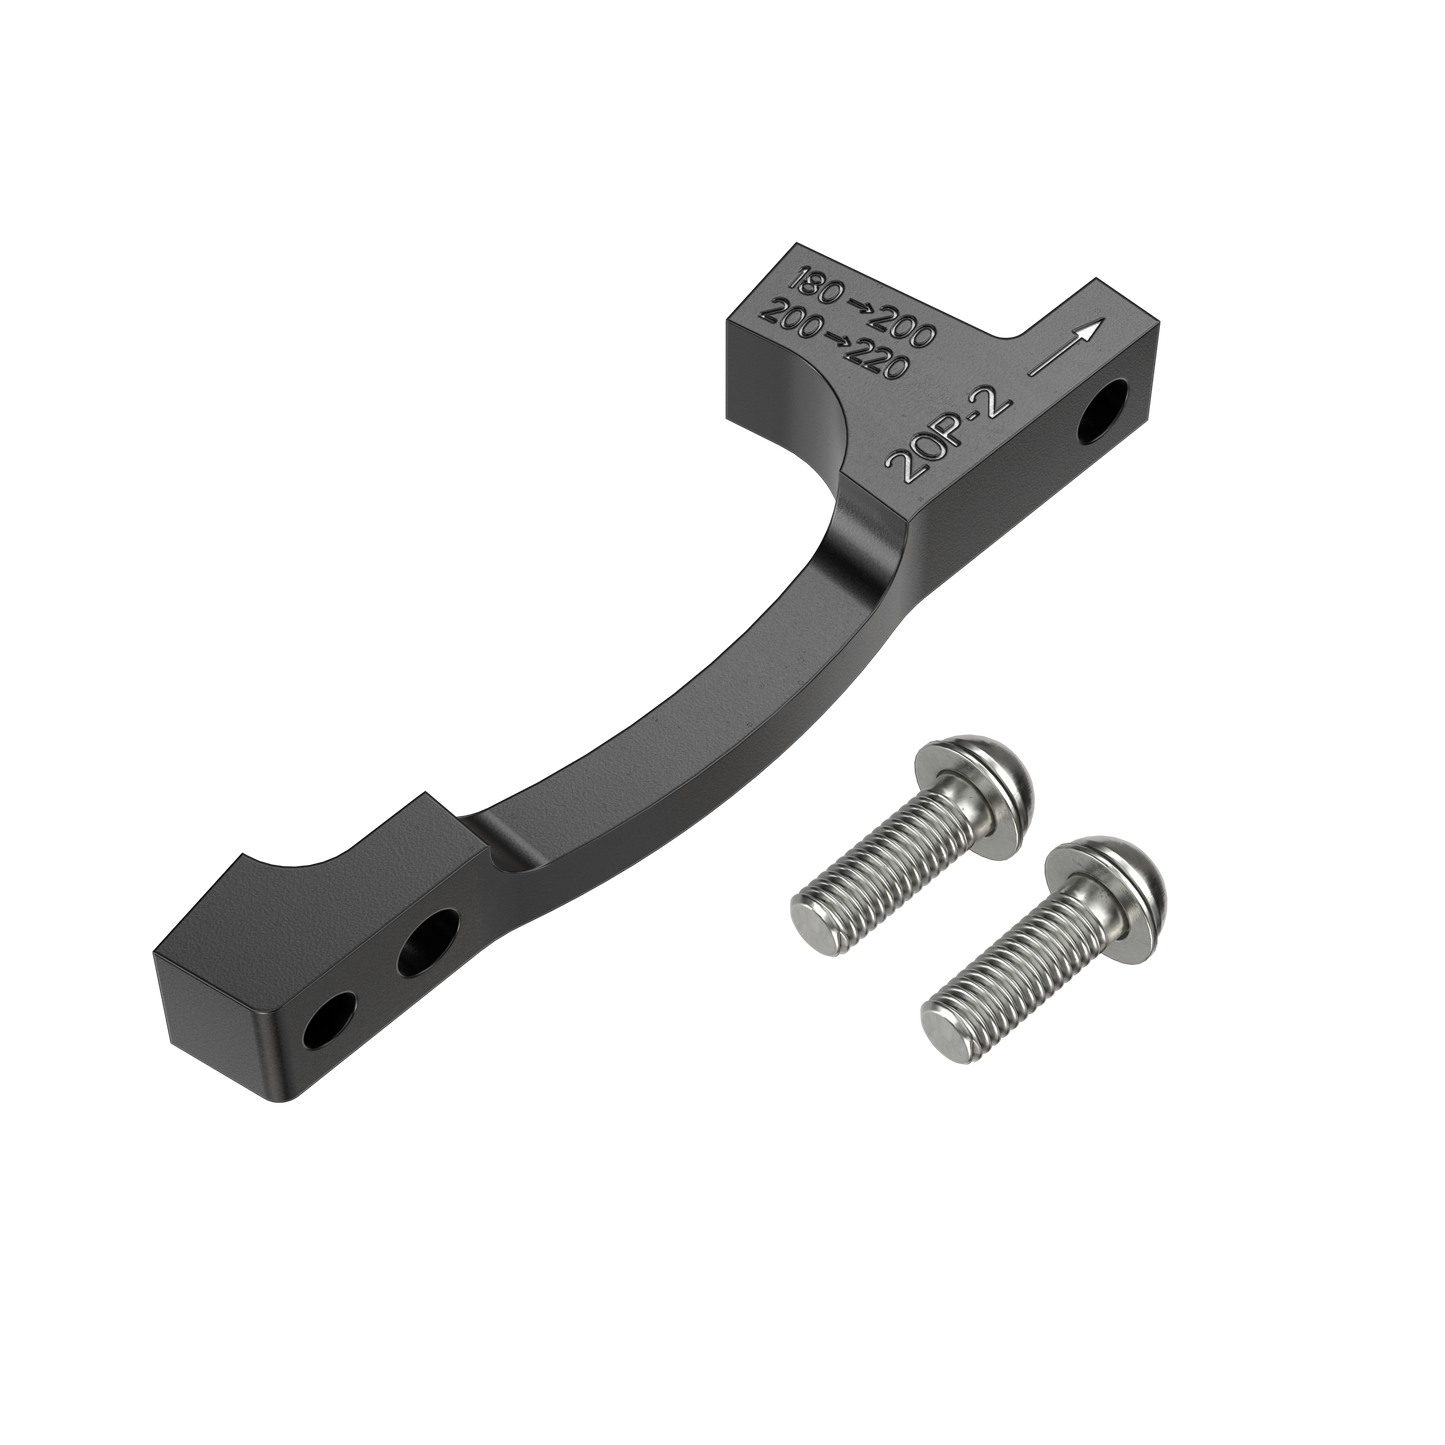 SRAM 20P Standard Mount Post Frame Or Fork To Post Caliper - Post Frame Or Fork To Post Caliper - F 180-200mm 200-220mm - R 180-200mm 200-220mm - Image 1